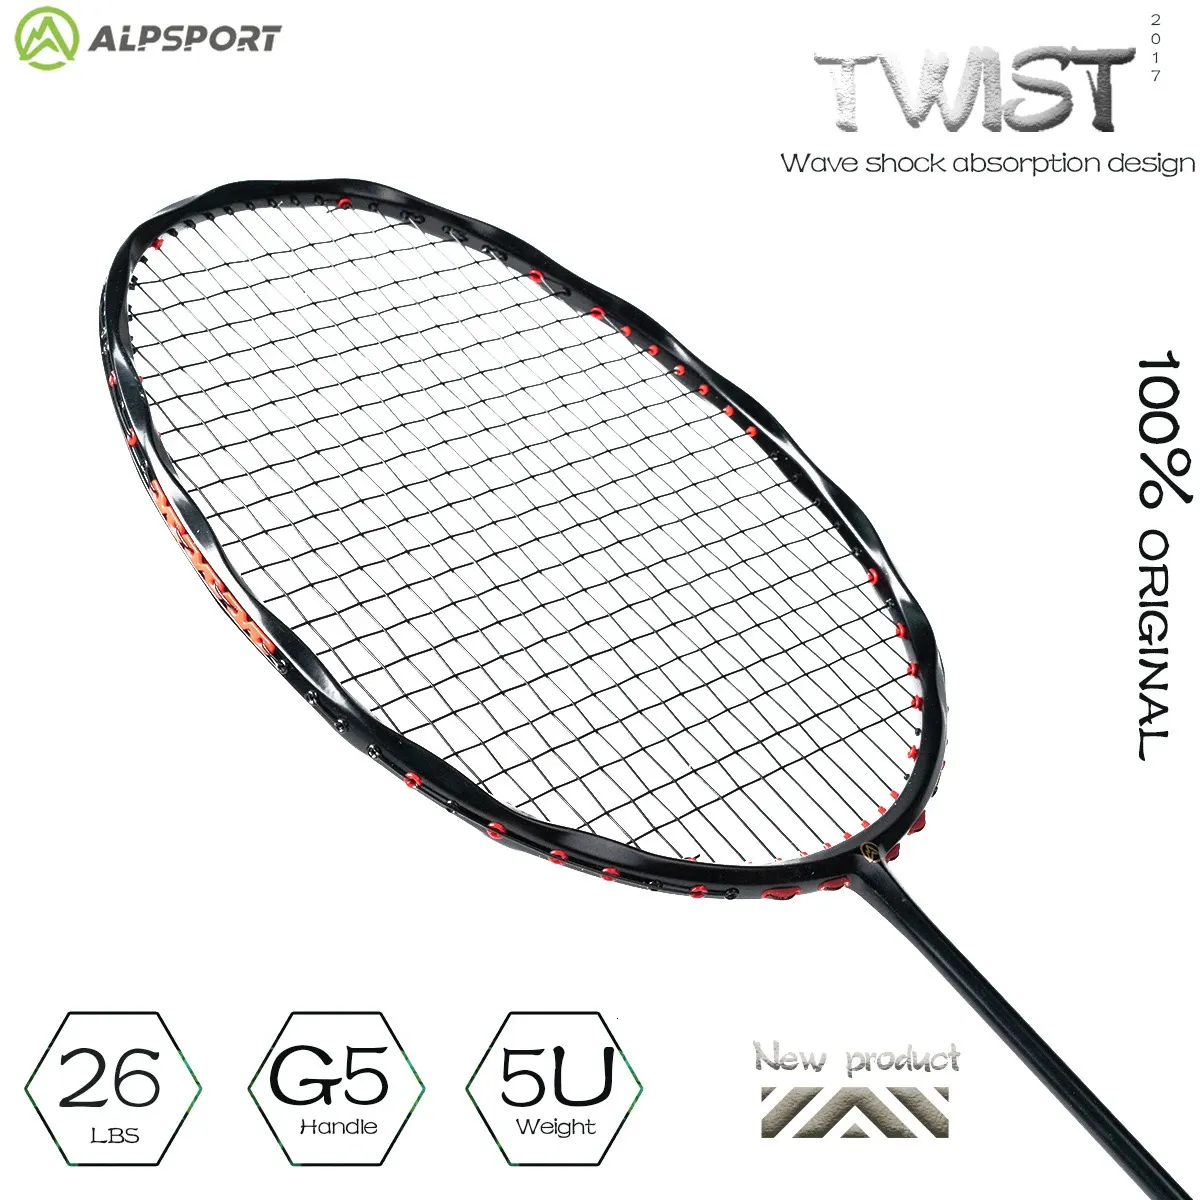 Alpsport V5 2 pcs/lot raquette de Badminton Maximum 38 lbs 5U 75g cadre ondulé entièrement en fibre de carbone avec cordes et poignée 240227